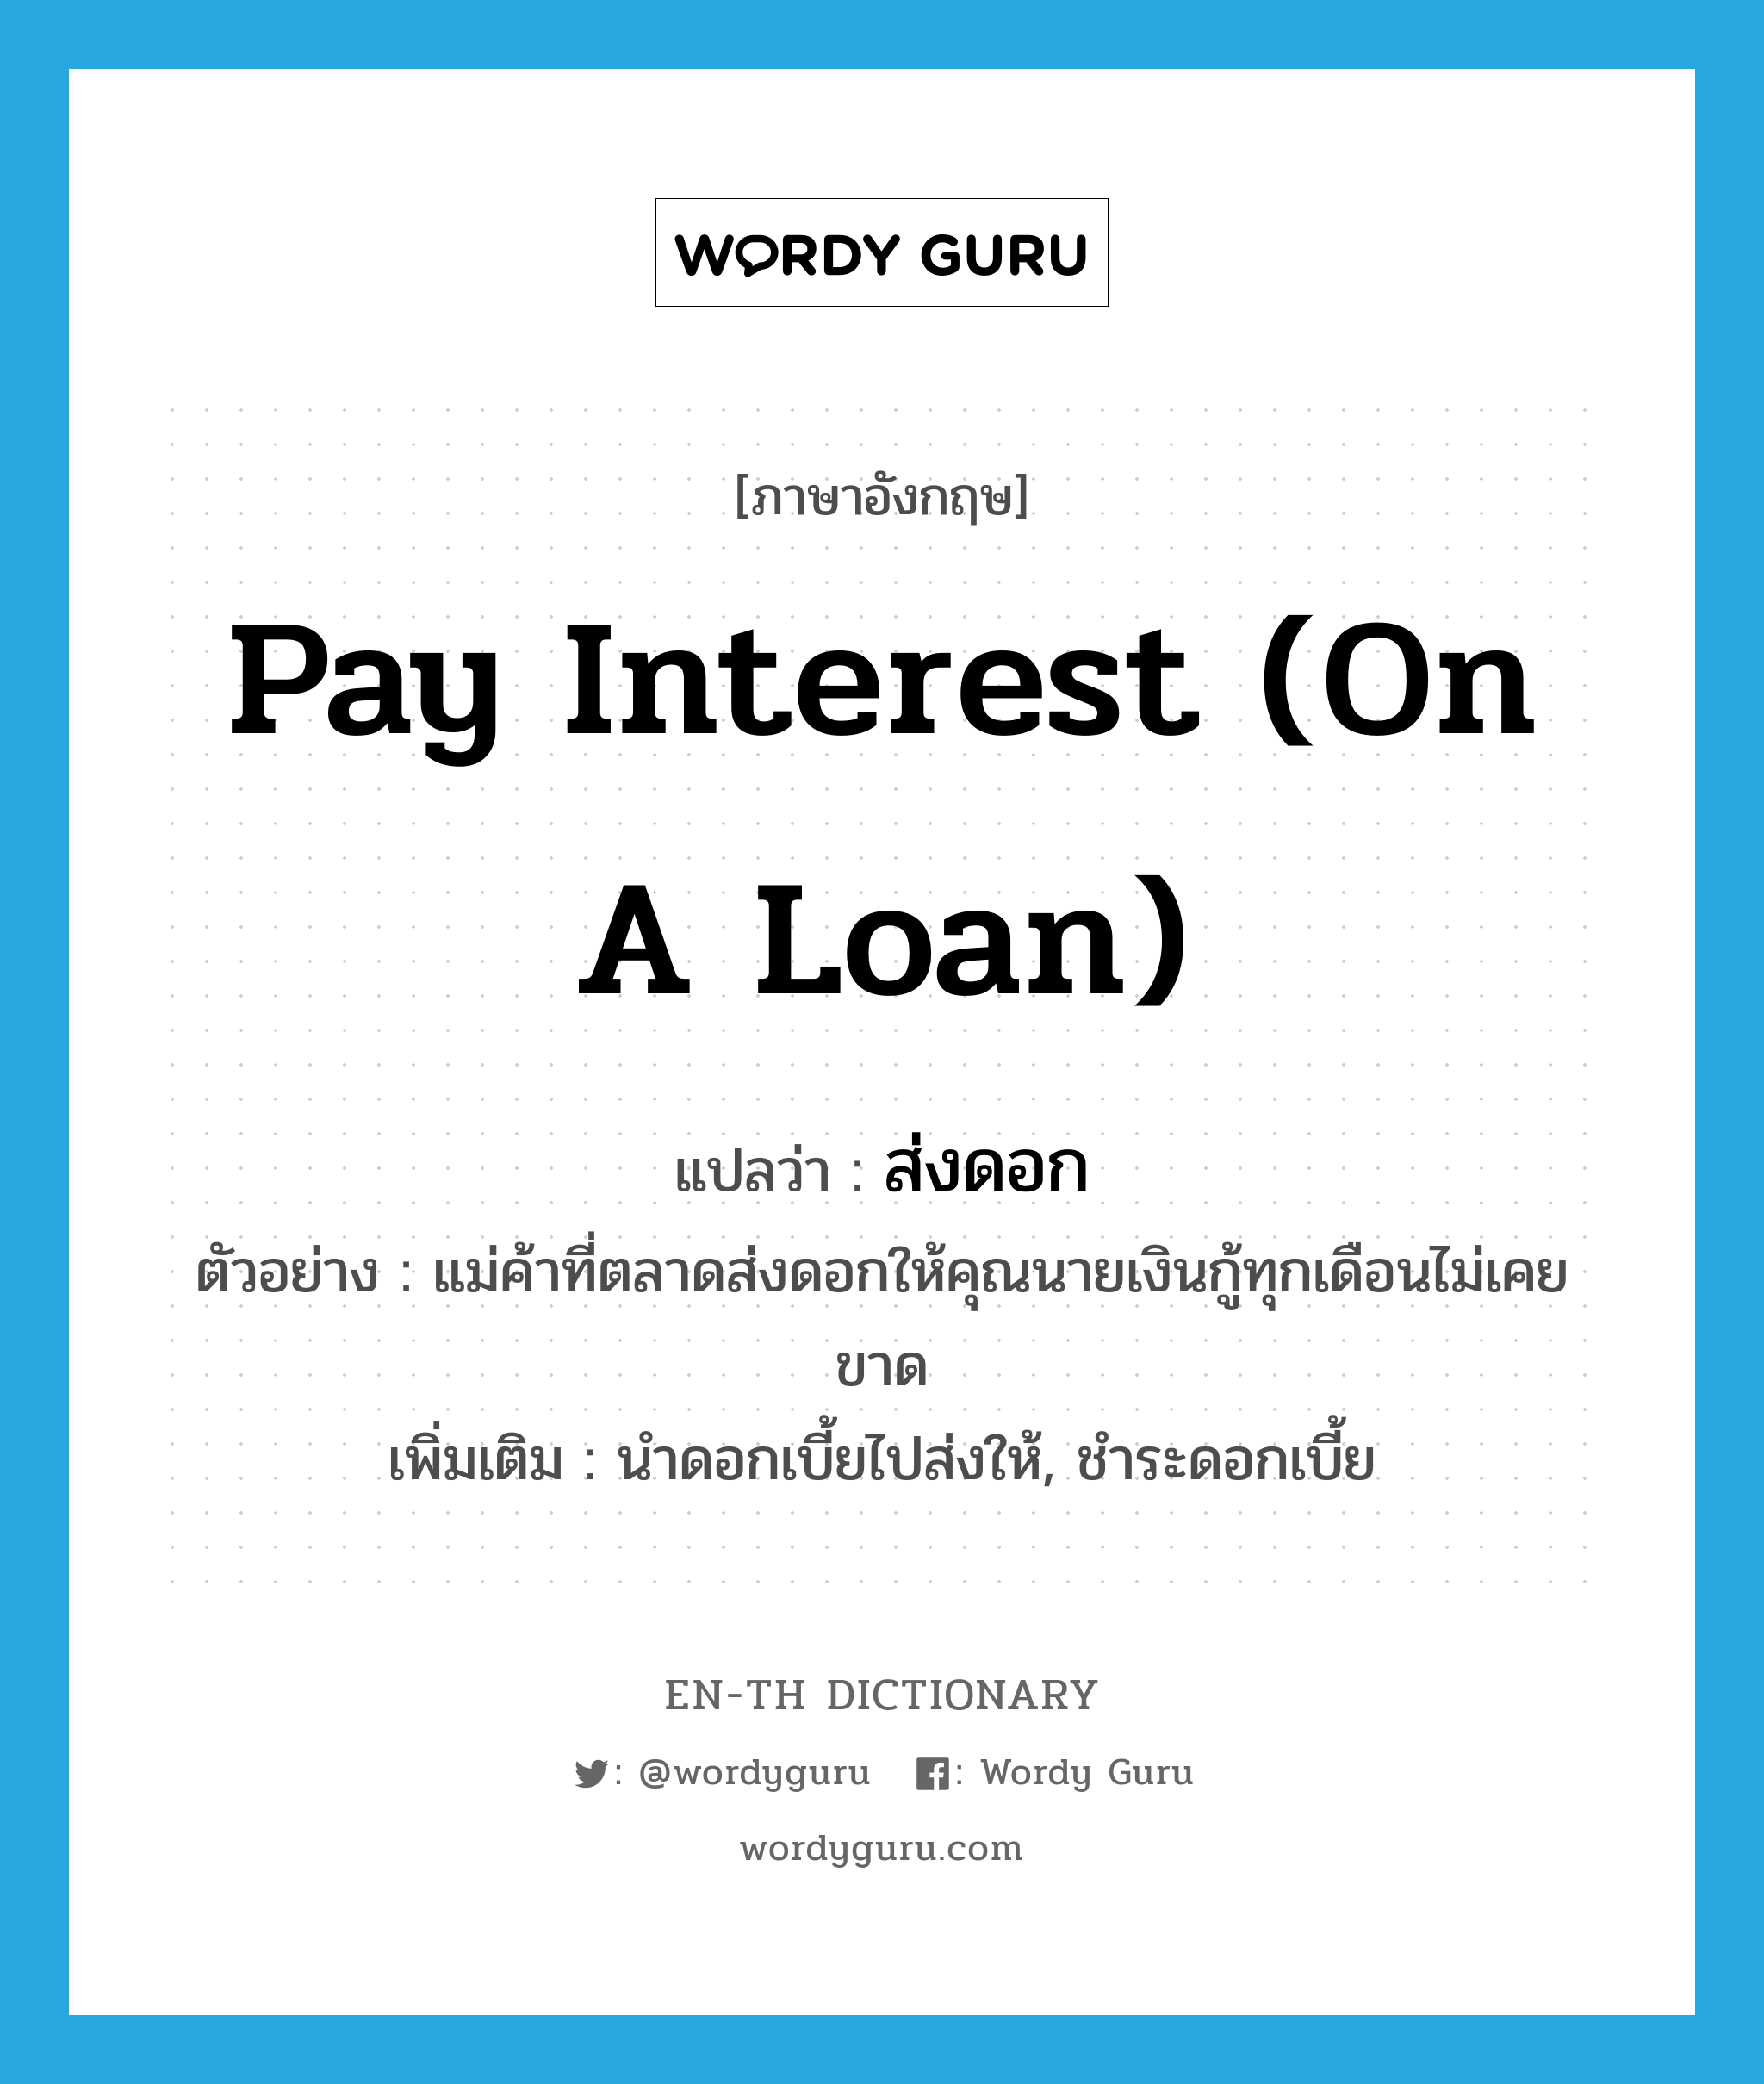 pay interest (on a loan) แปลว่า?, คำศัพท์ภาษาอังกฤษ pay interest (on a loan) แปลว่า ส่งดอก ประเภท V ตัวอย่าง แม่ค้าที่ตลาดส่งดอกให้คุณนายเงินกู้ทุกเดือนไม่เคยขาด เพิ่มเติม นำดอกเบี้ยไปส่งให้, ชำระดอกเบี้ย หมวด V